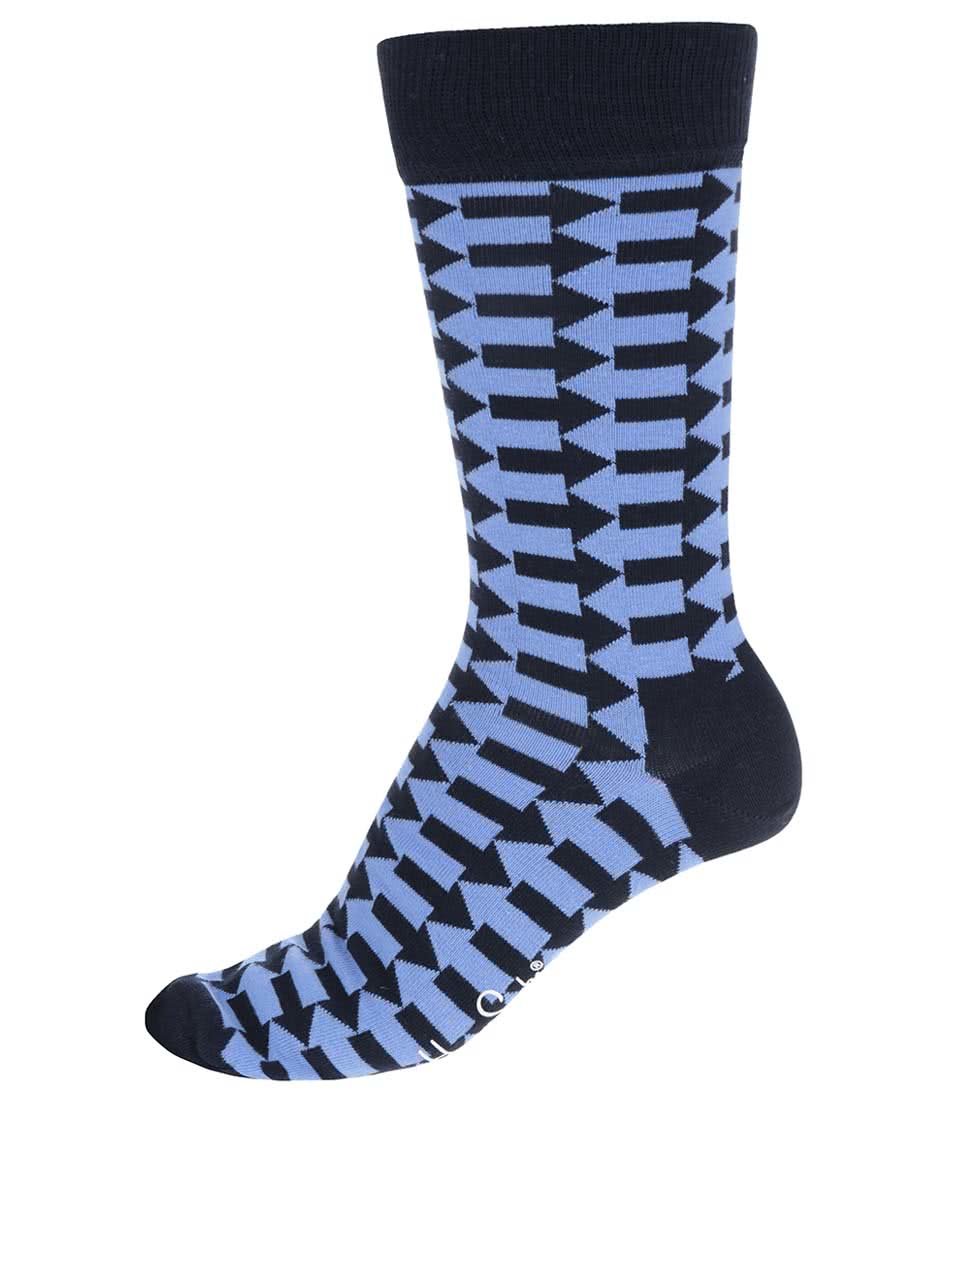 Modré pánské ponožky s šipkami Happy Socks Direction